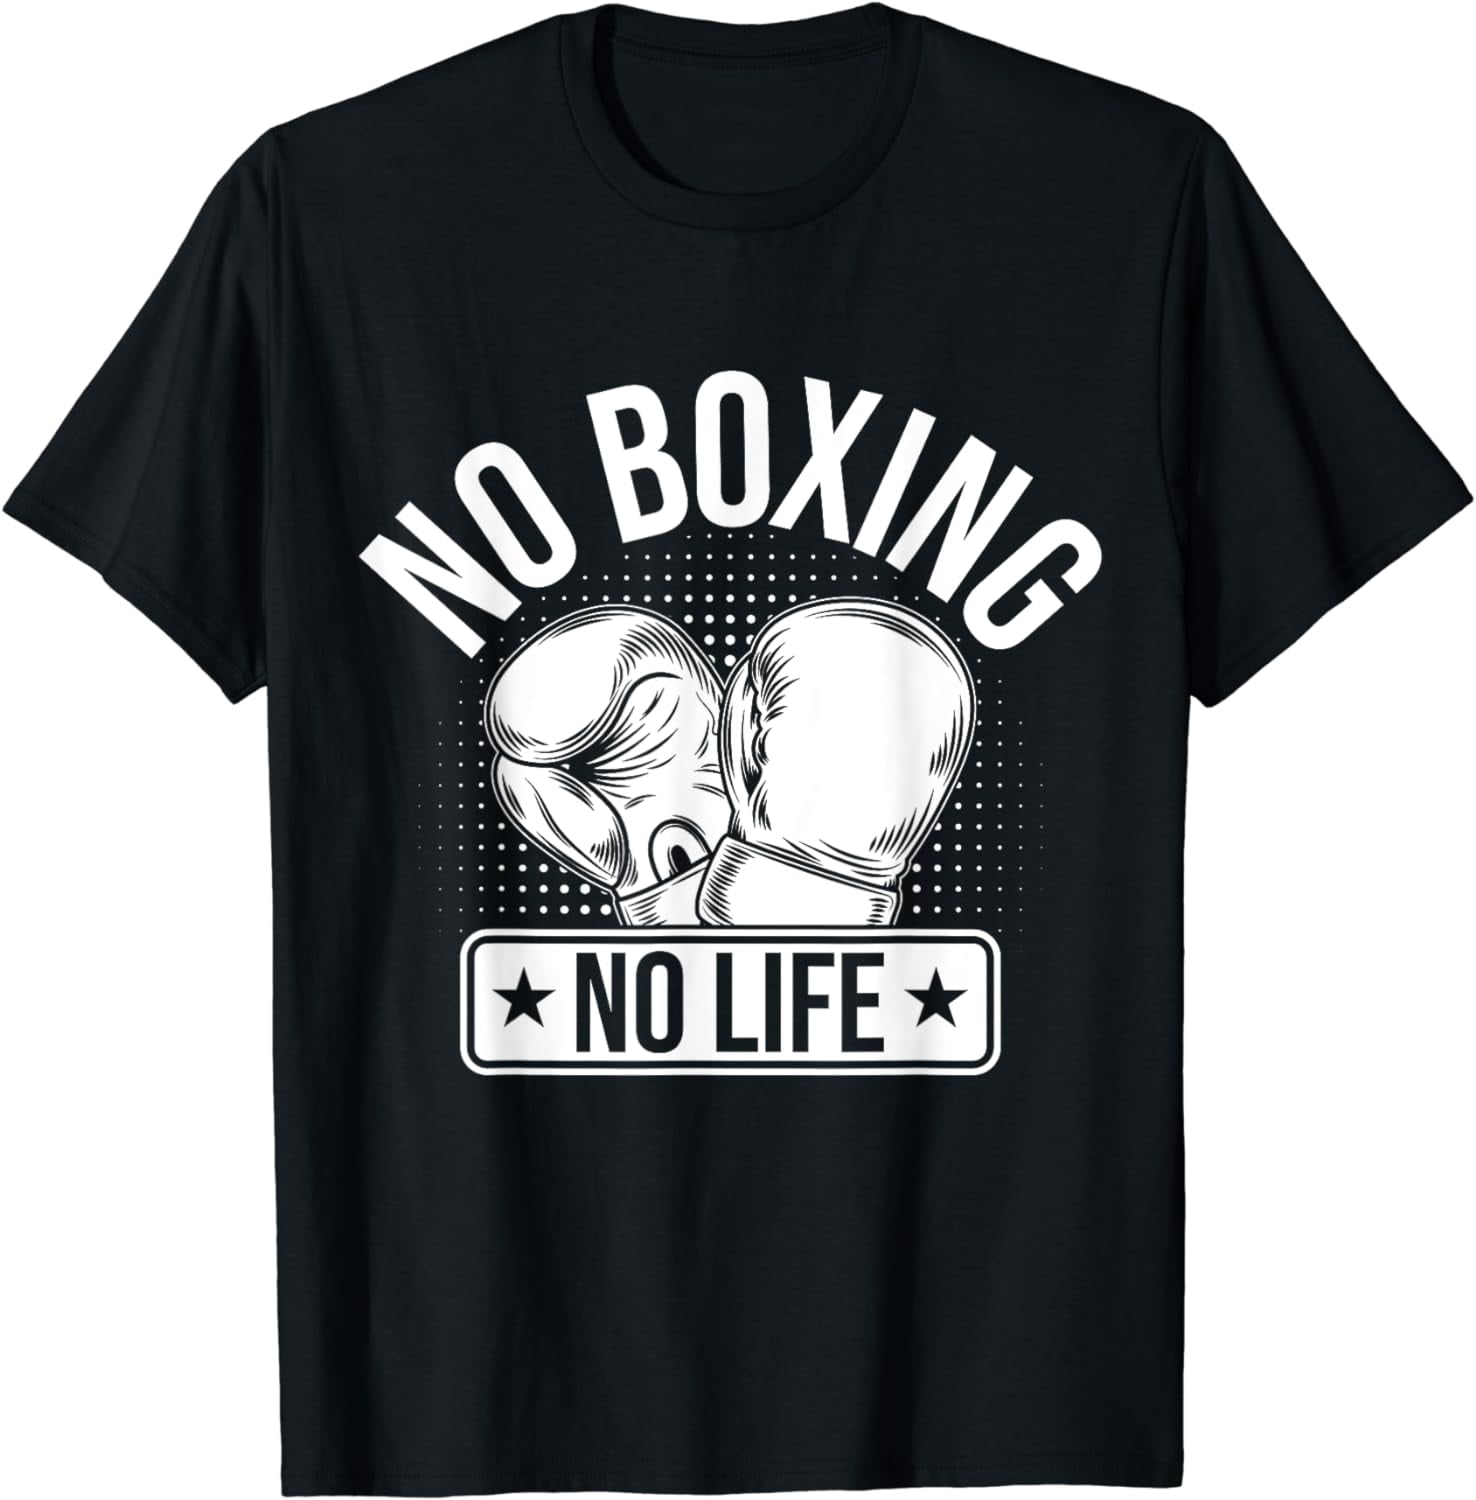 No Boing No Life T-Shirt - Walmart.com